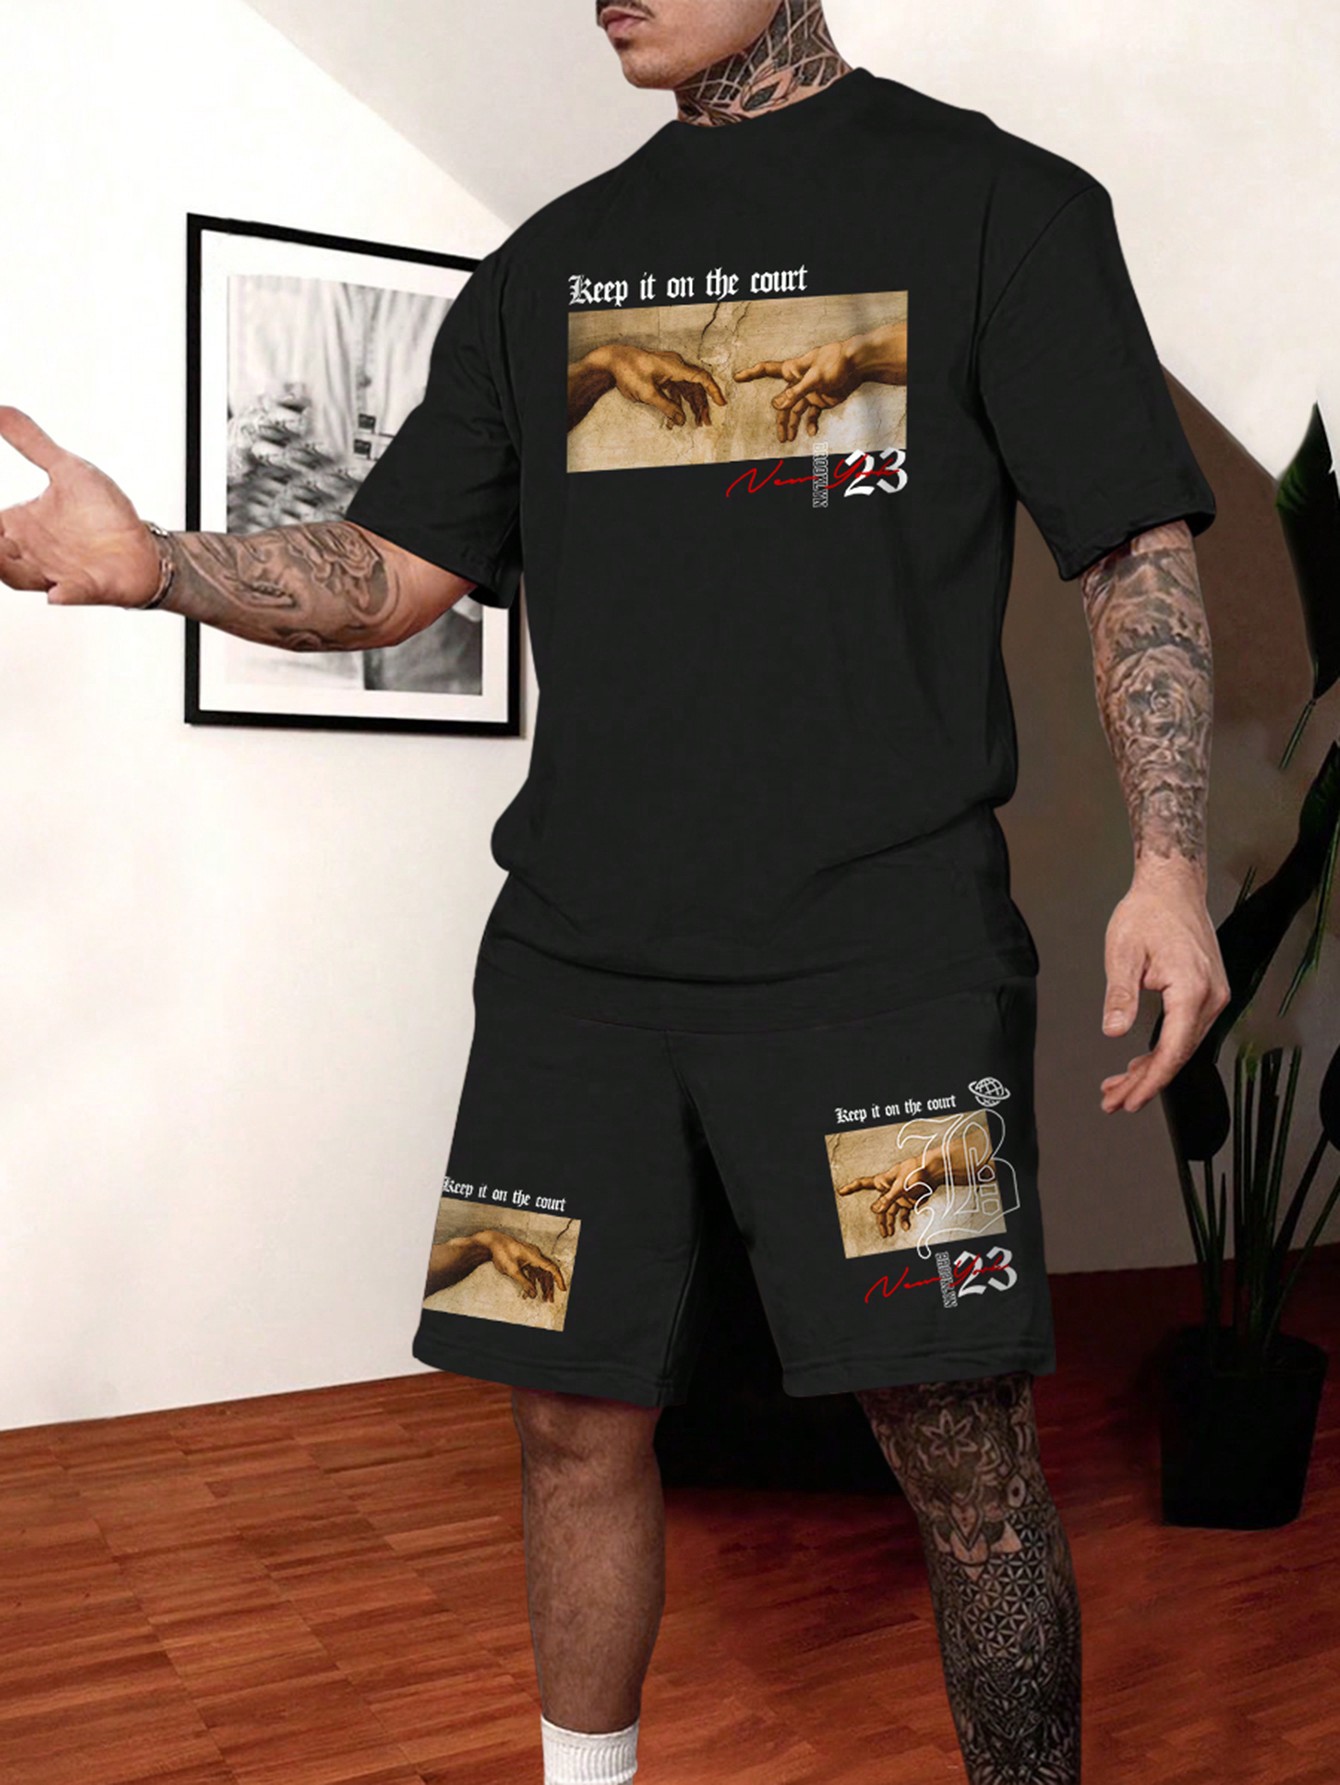 Мужская футболка с короткими рукавами и принтом масляной живописи Manfinity LEGND, черный комплект мужских футболок с принтом